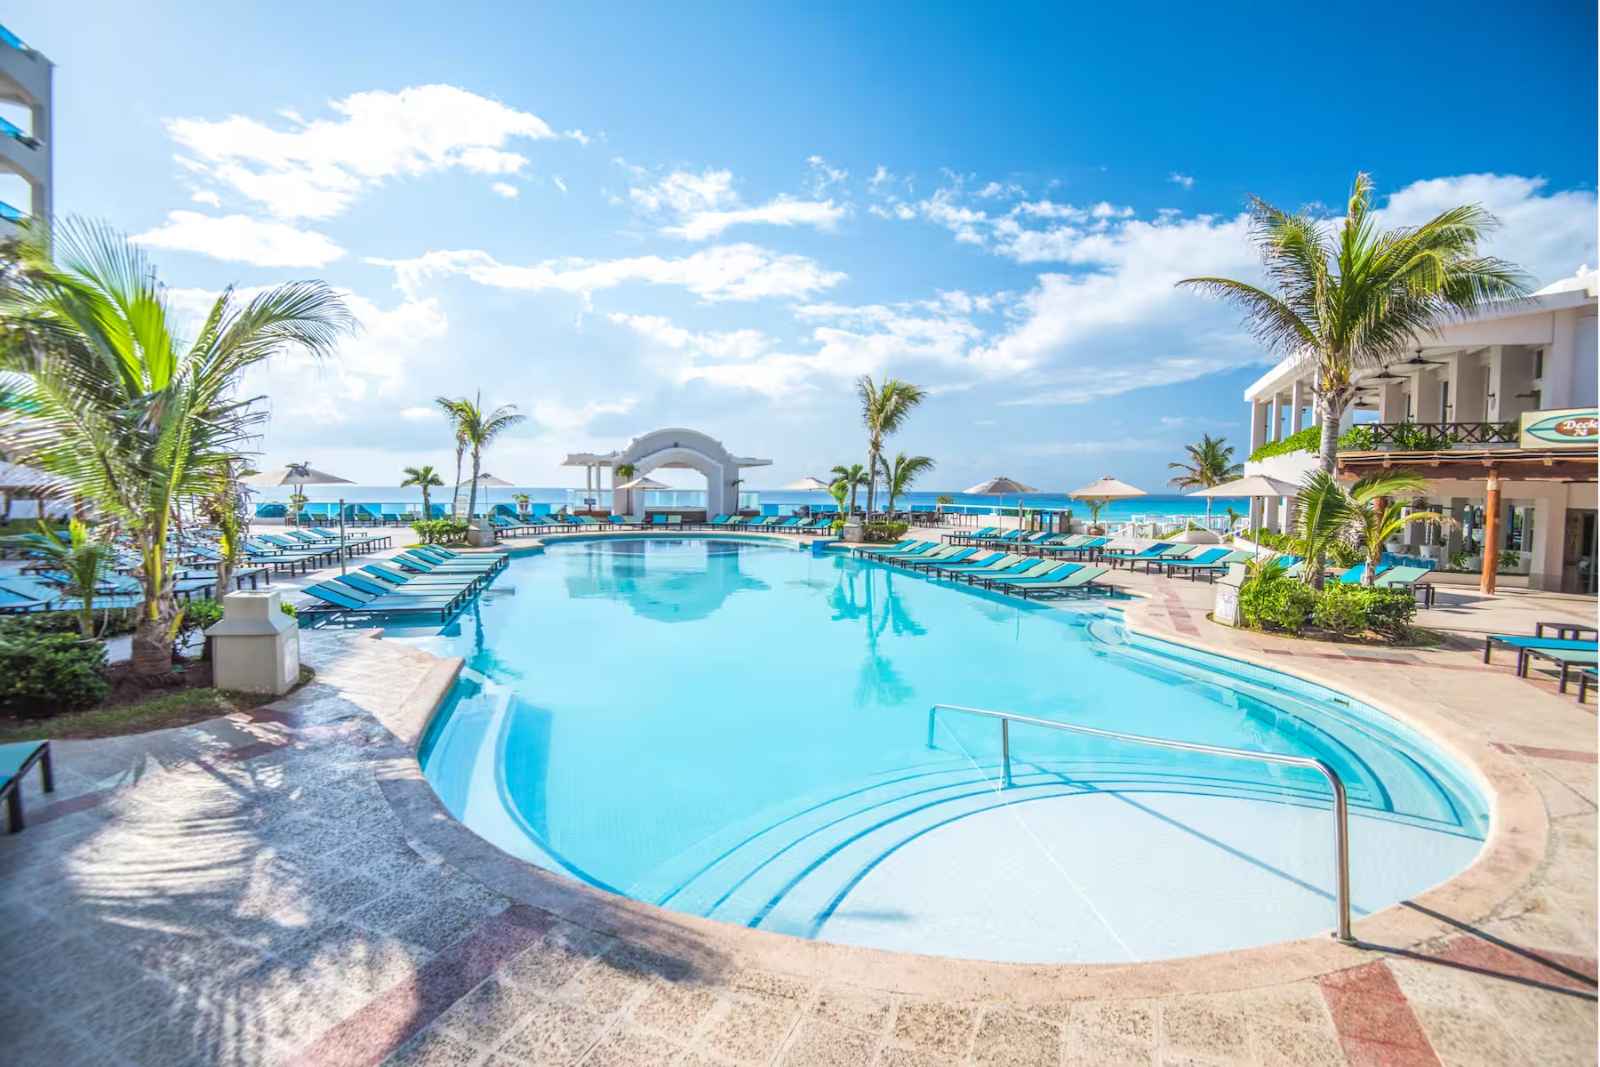 All Inclusive Resorts in Cancun Wyndham Alltra Cancun pool